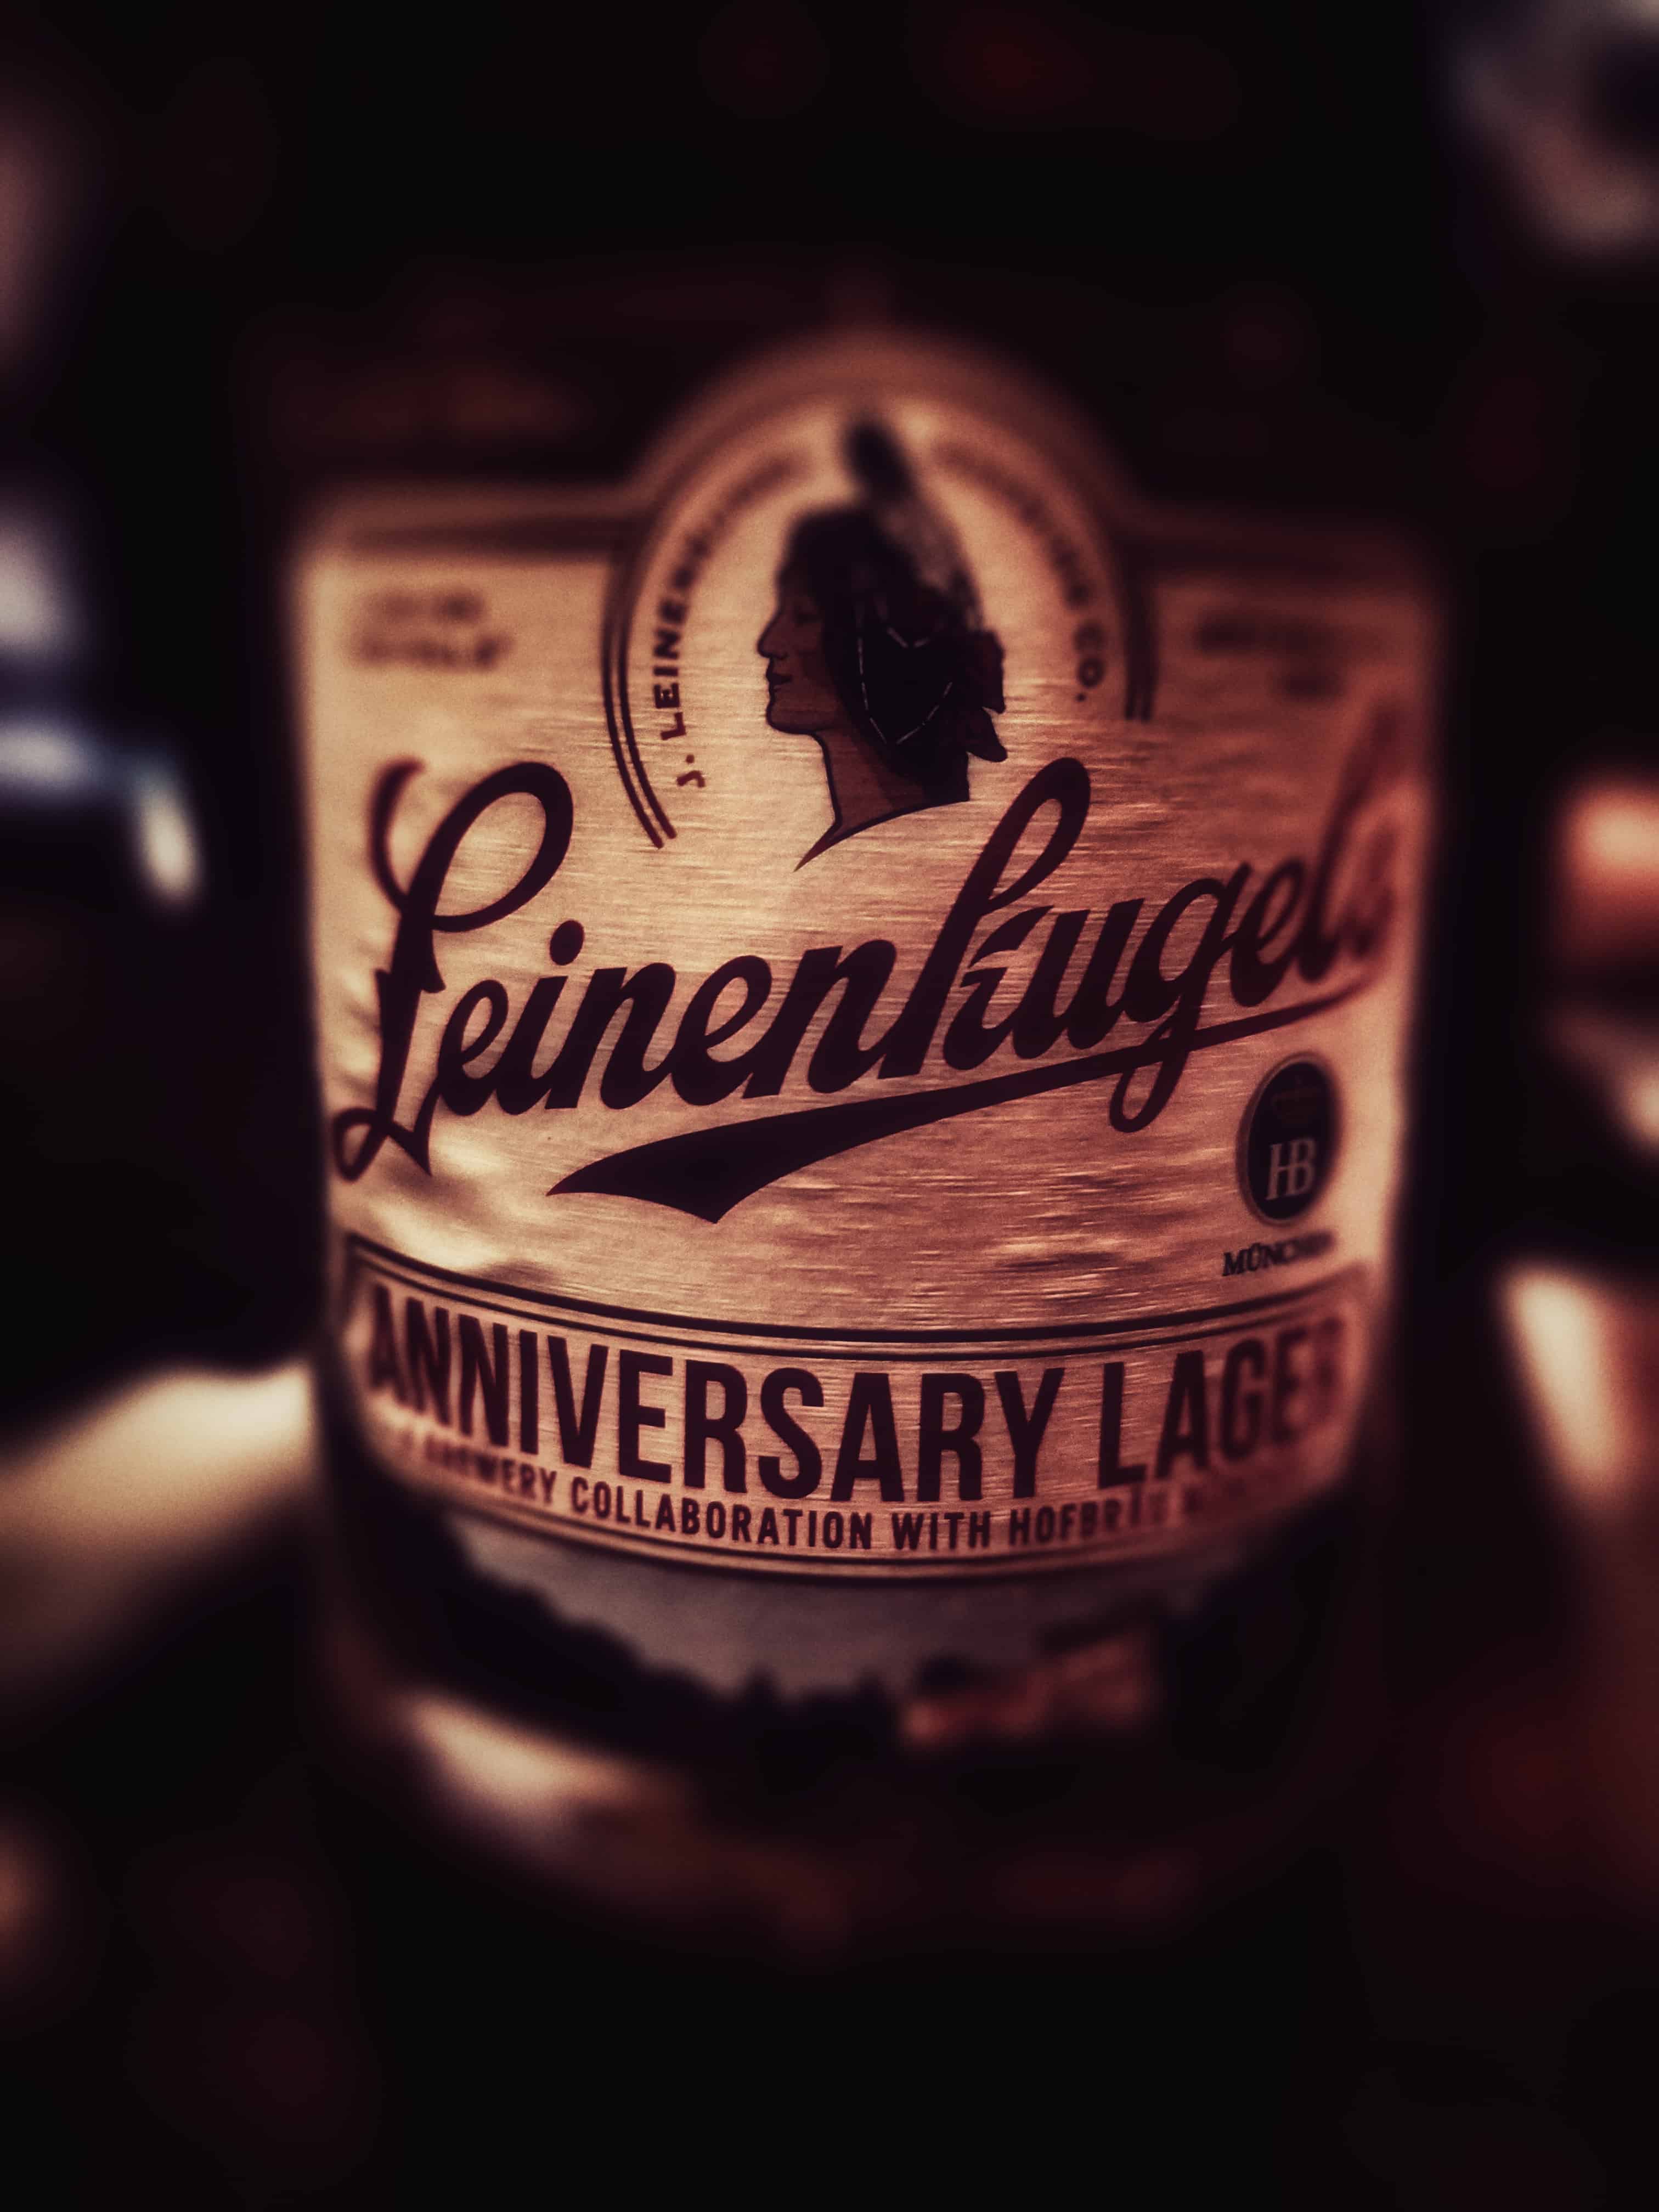 leinenkugels-anniversary-lager